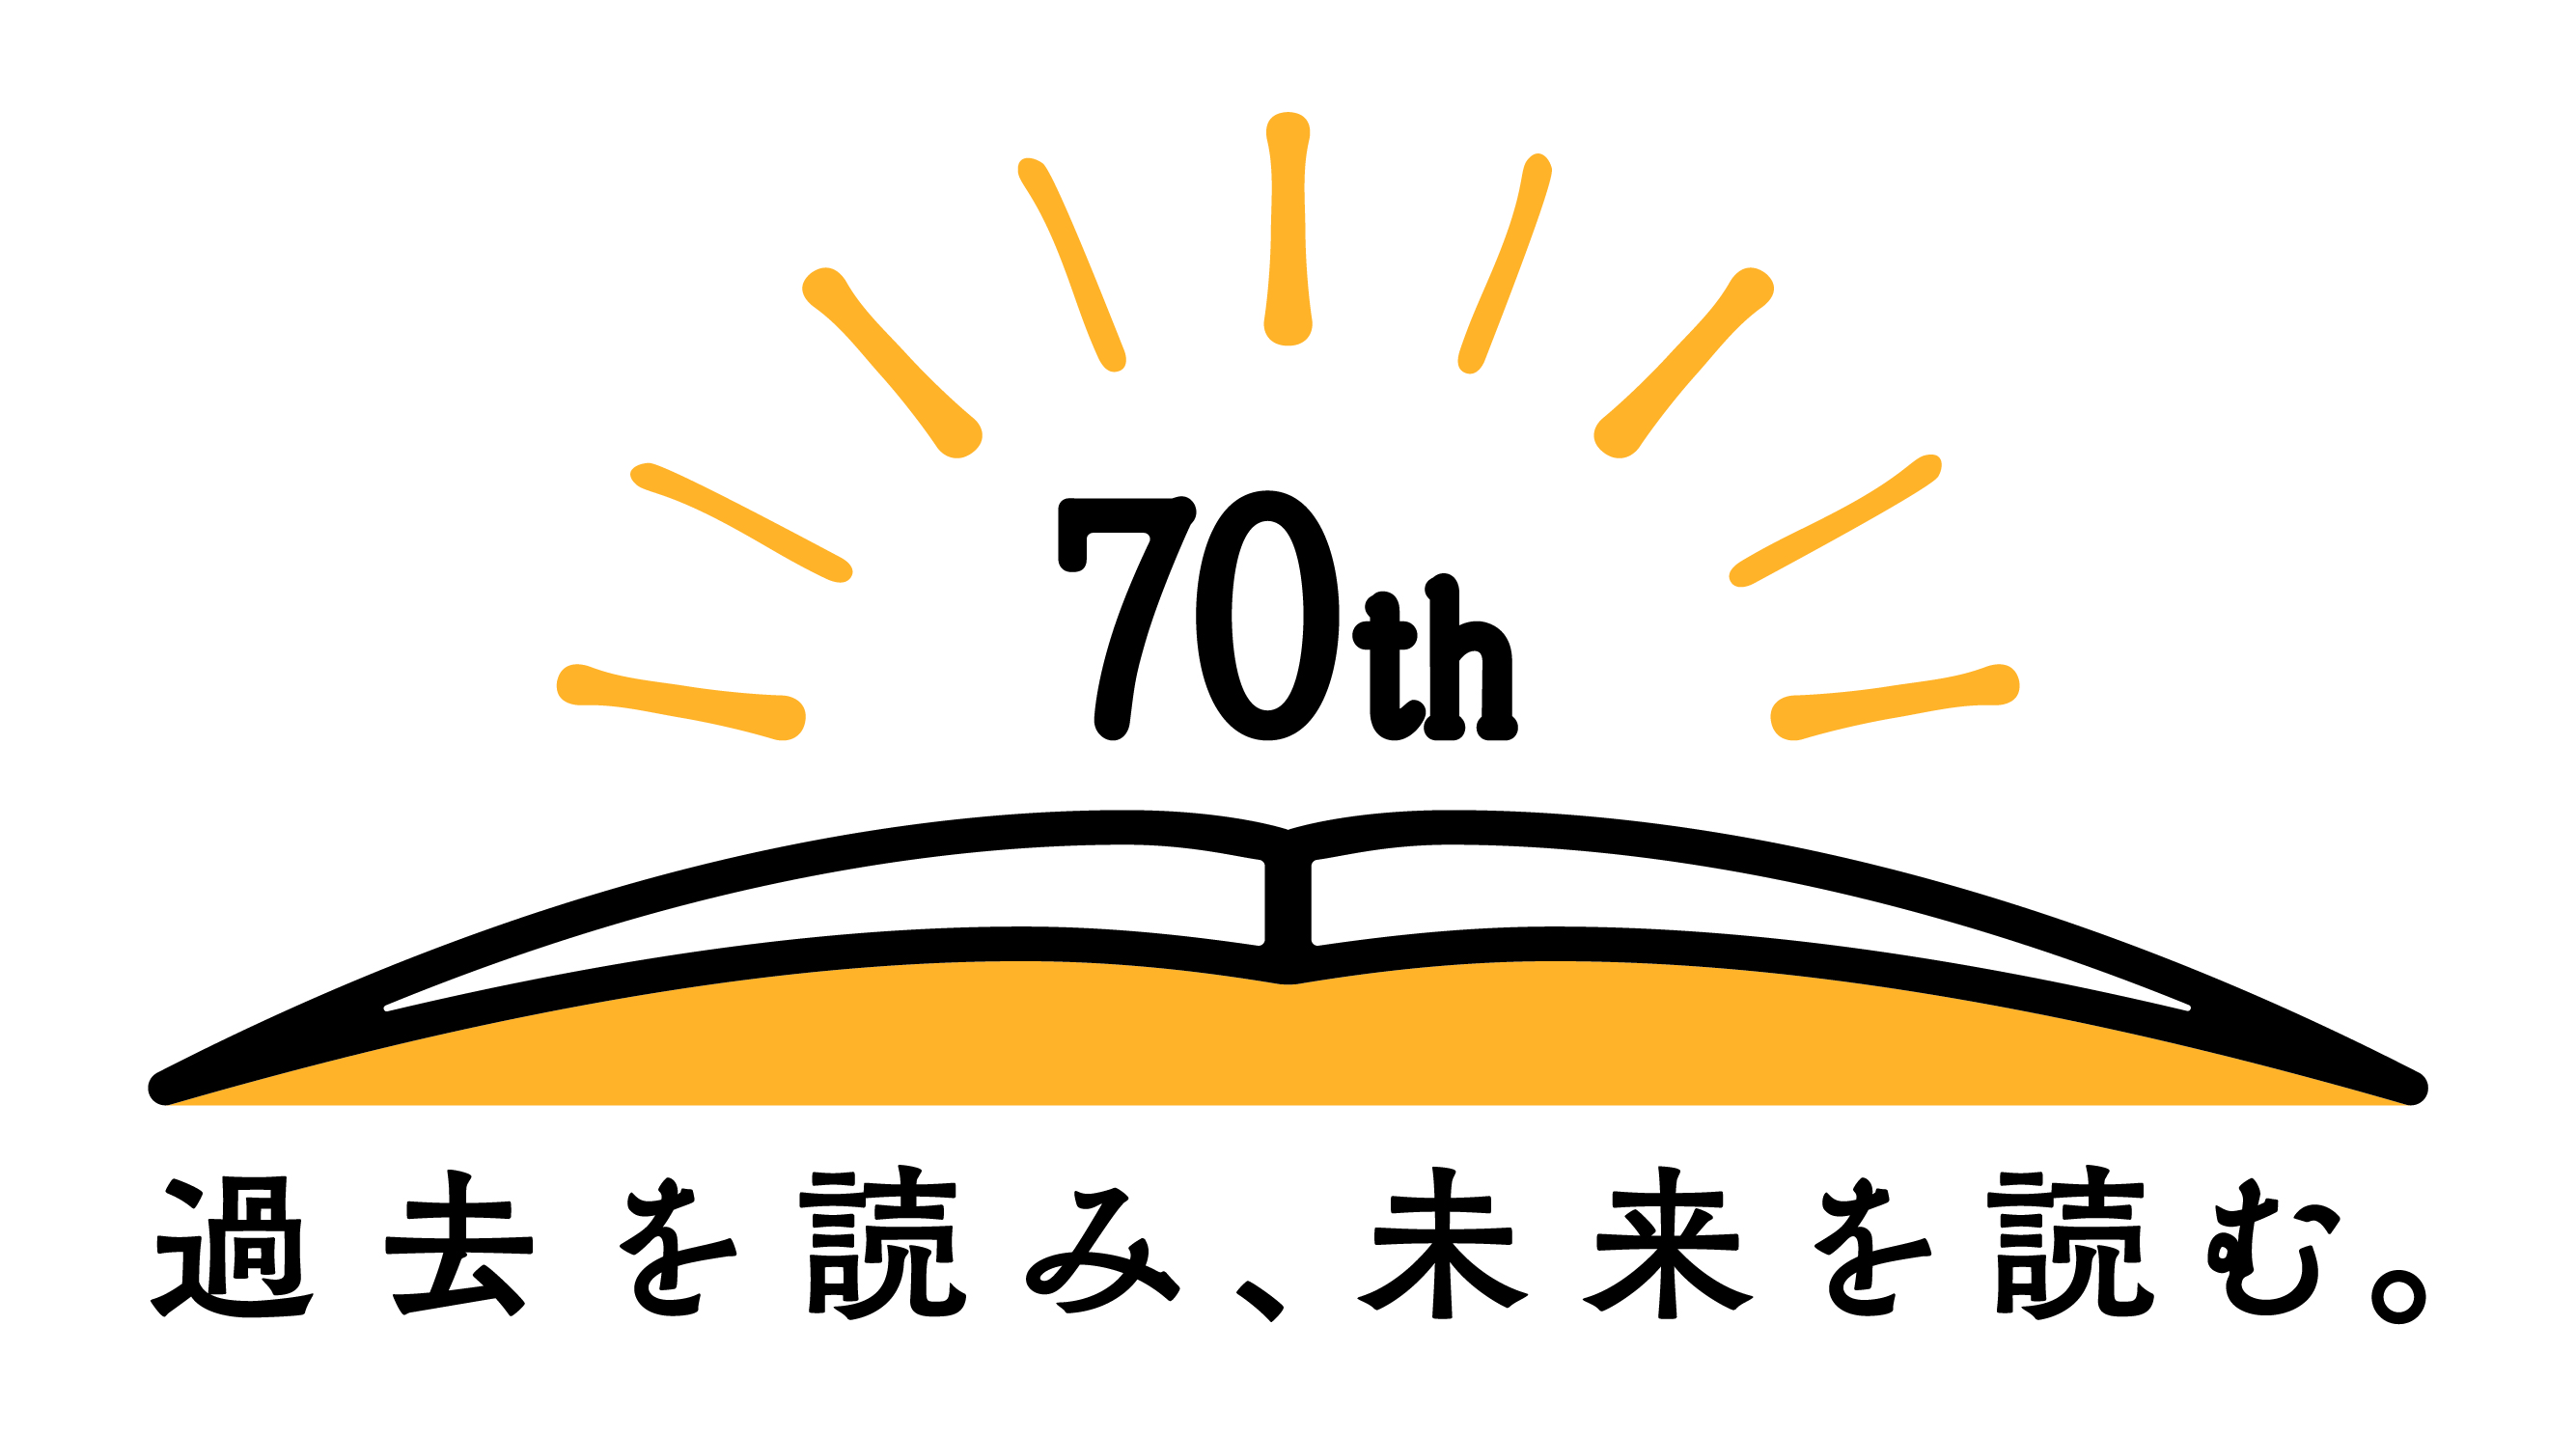 国立国会図書館開館70周年ロゴ「過去を読み、未来を読む。」